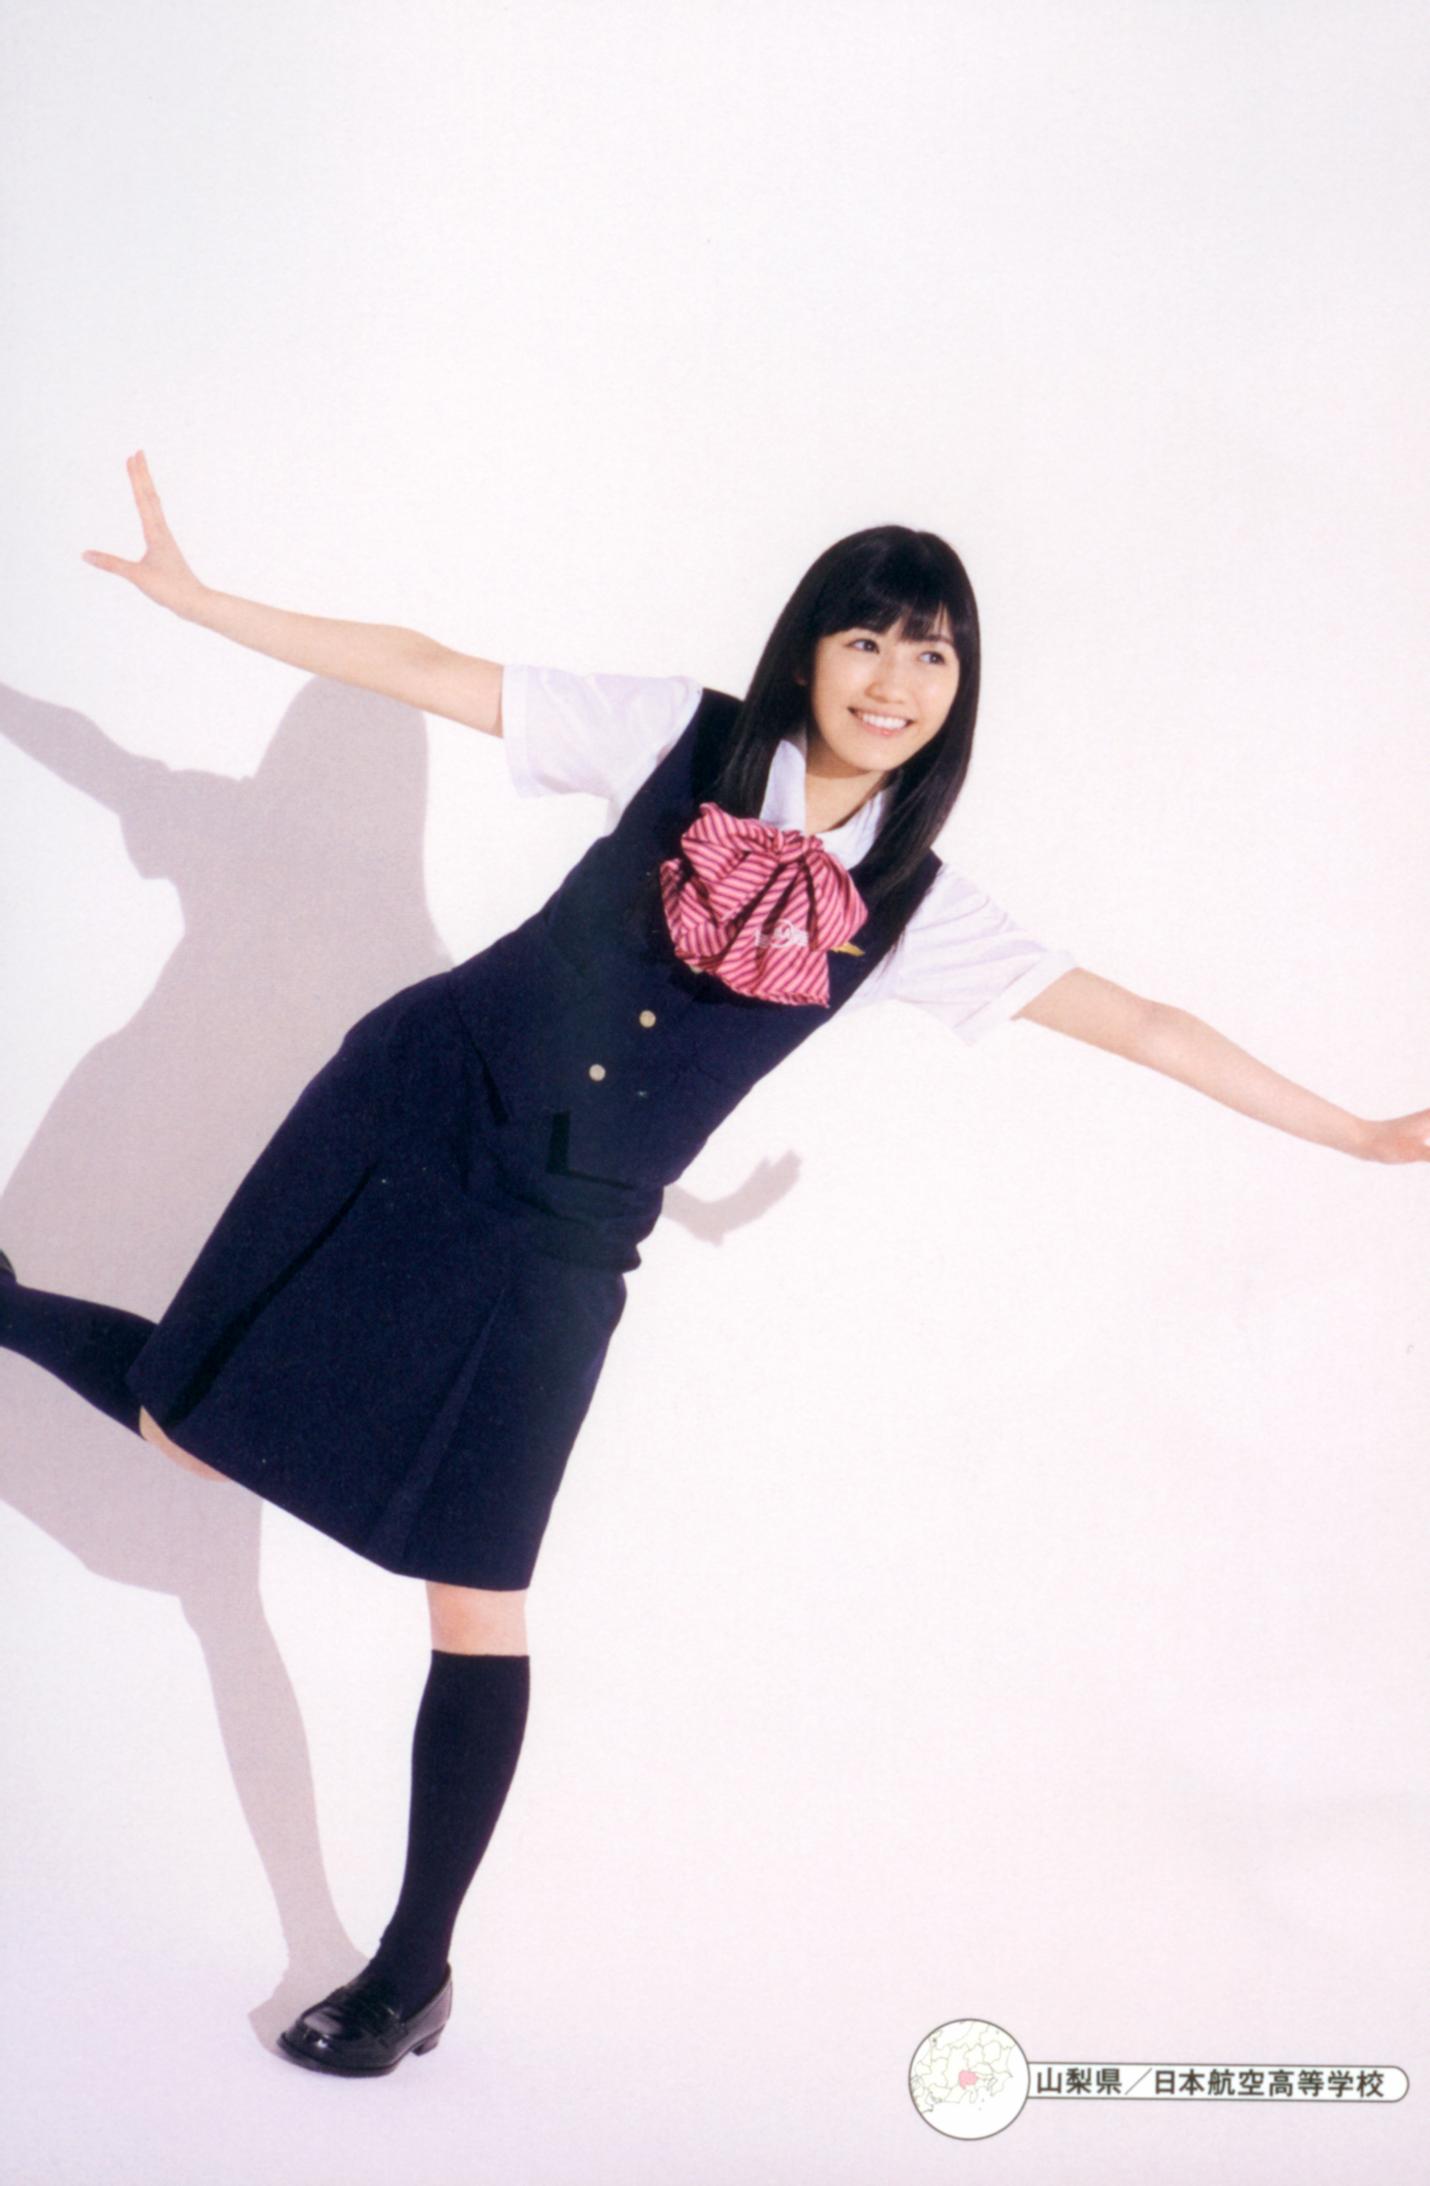 Watanabe Mayu Photobook 'Seifuku Zukan Saigo no Seifuku' - AKB48 Photo ...